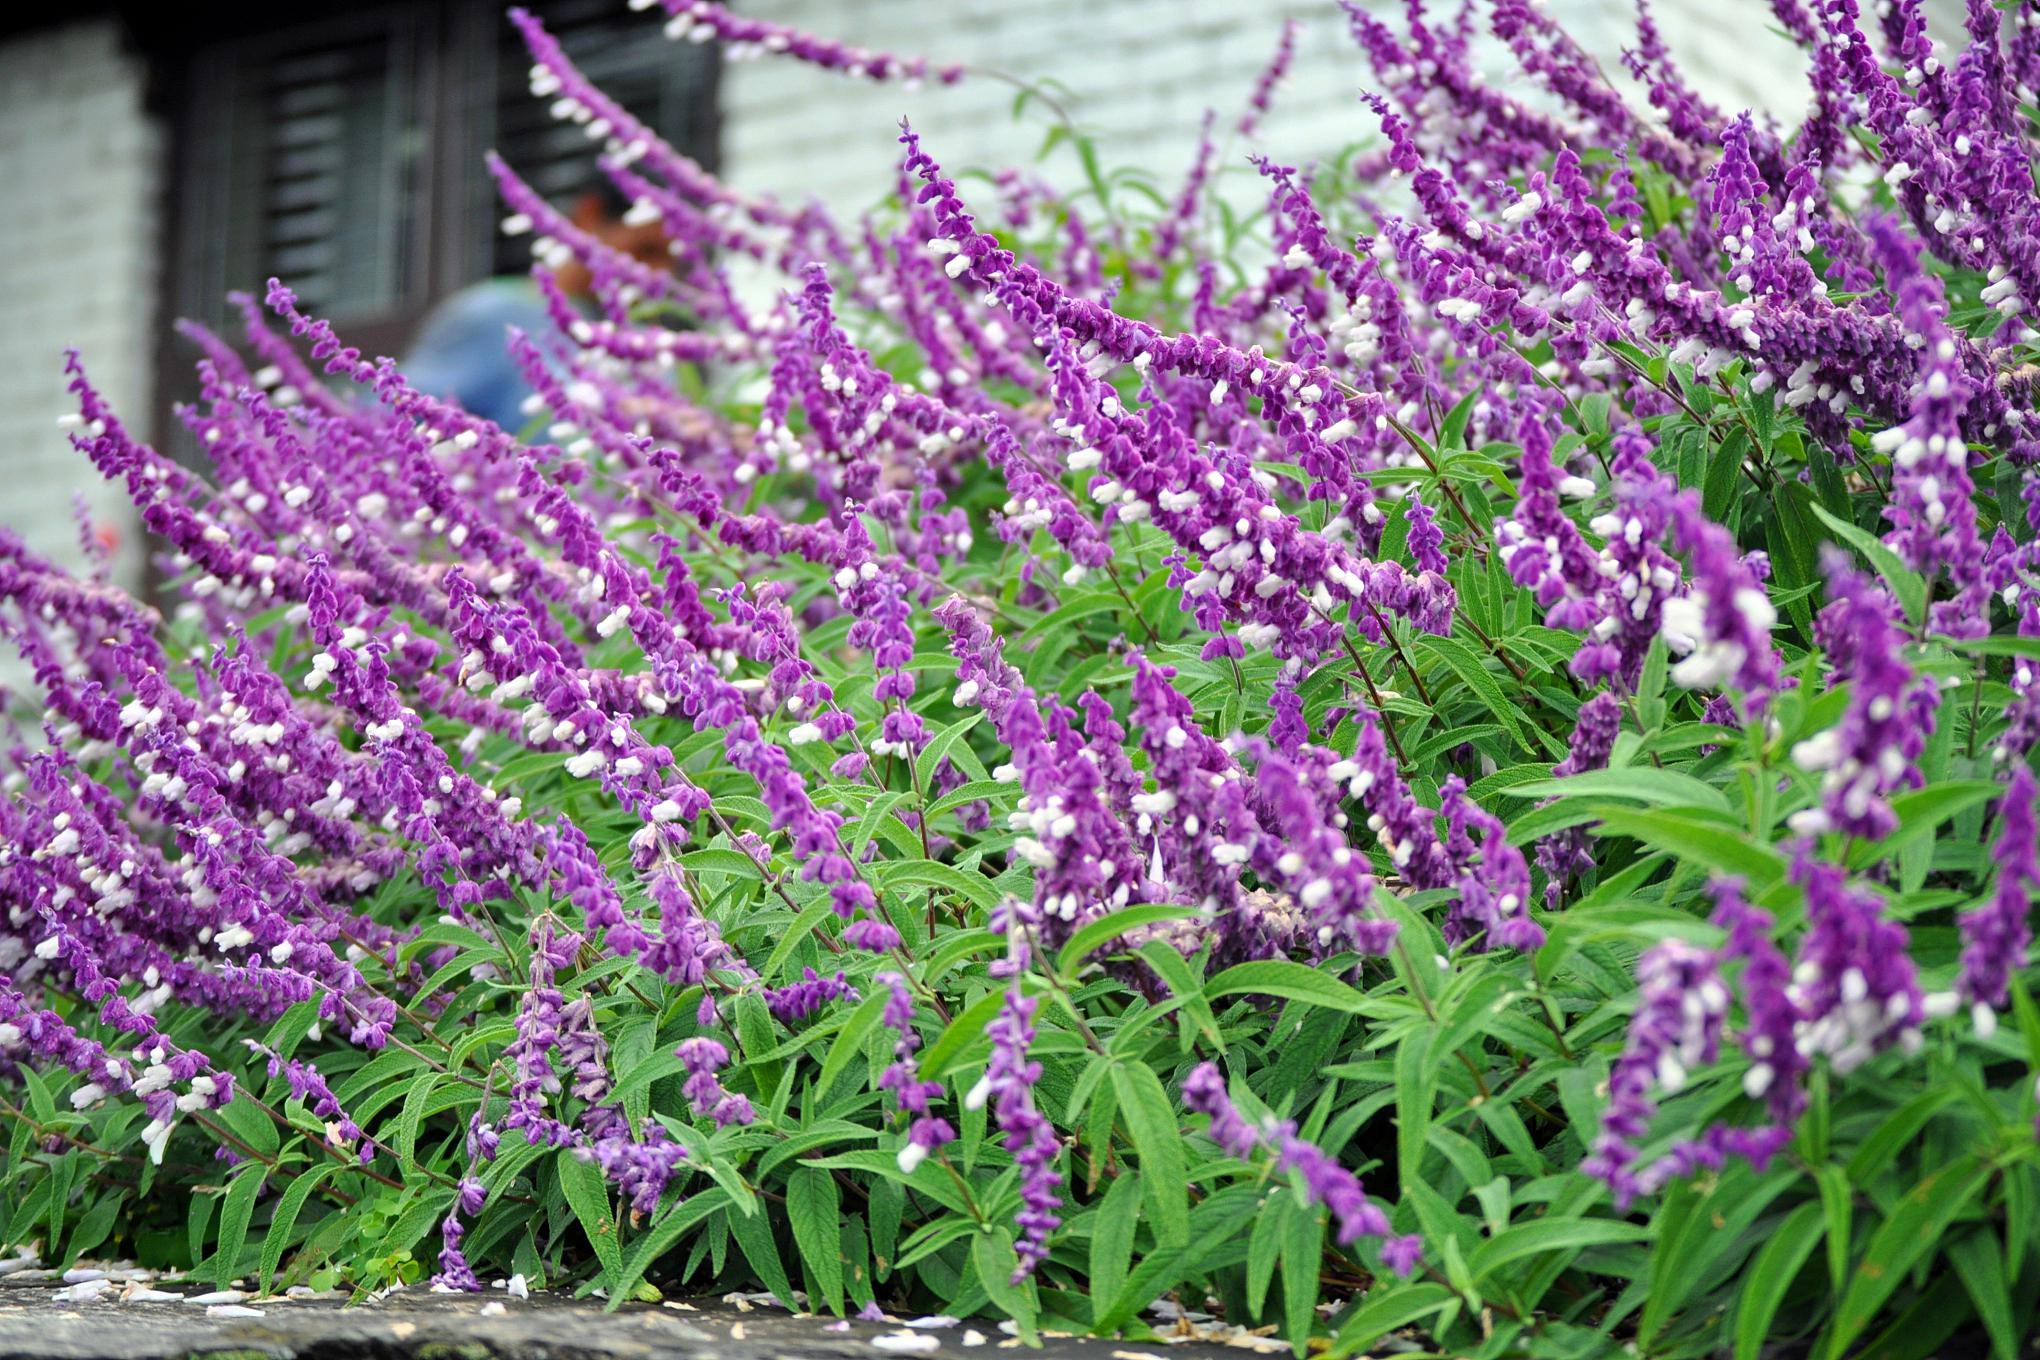 蛇鞭菊 蛇鞭菊,蓝紫色的线性花材,高挑疏落,随风飘荡,为花园增添了一